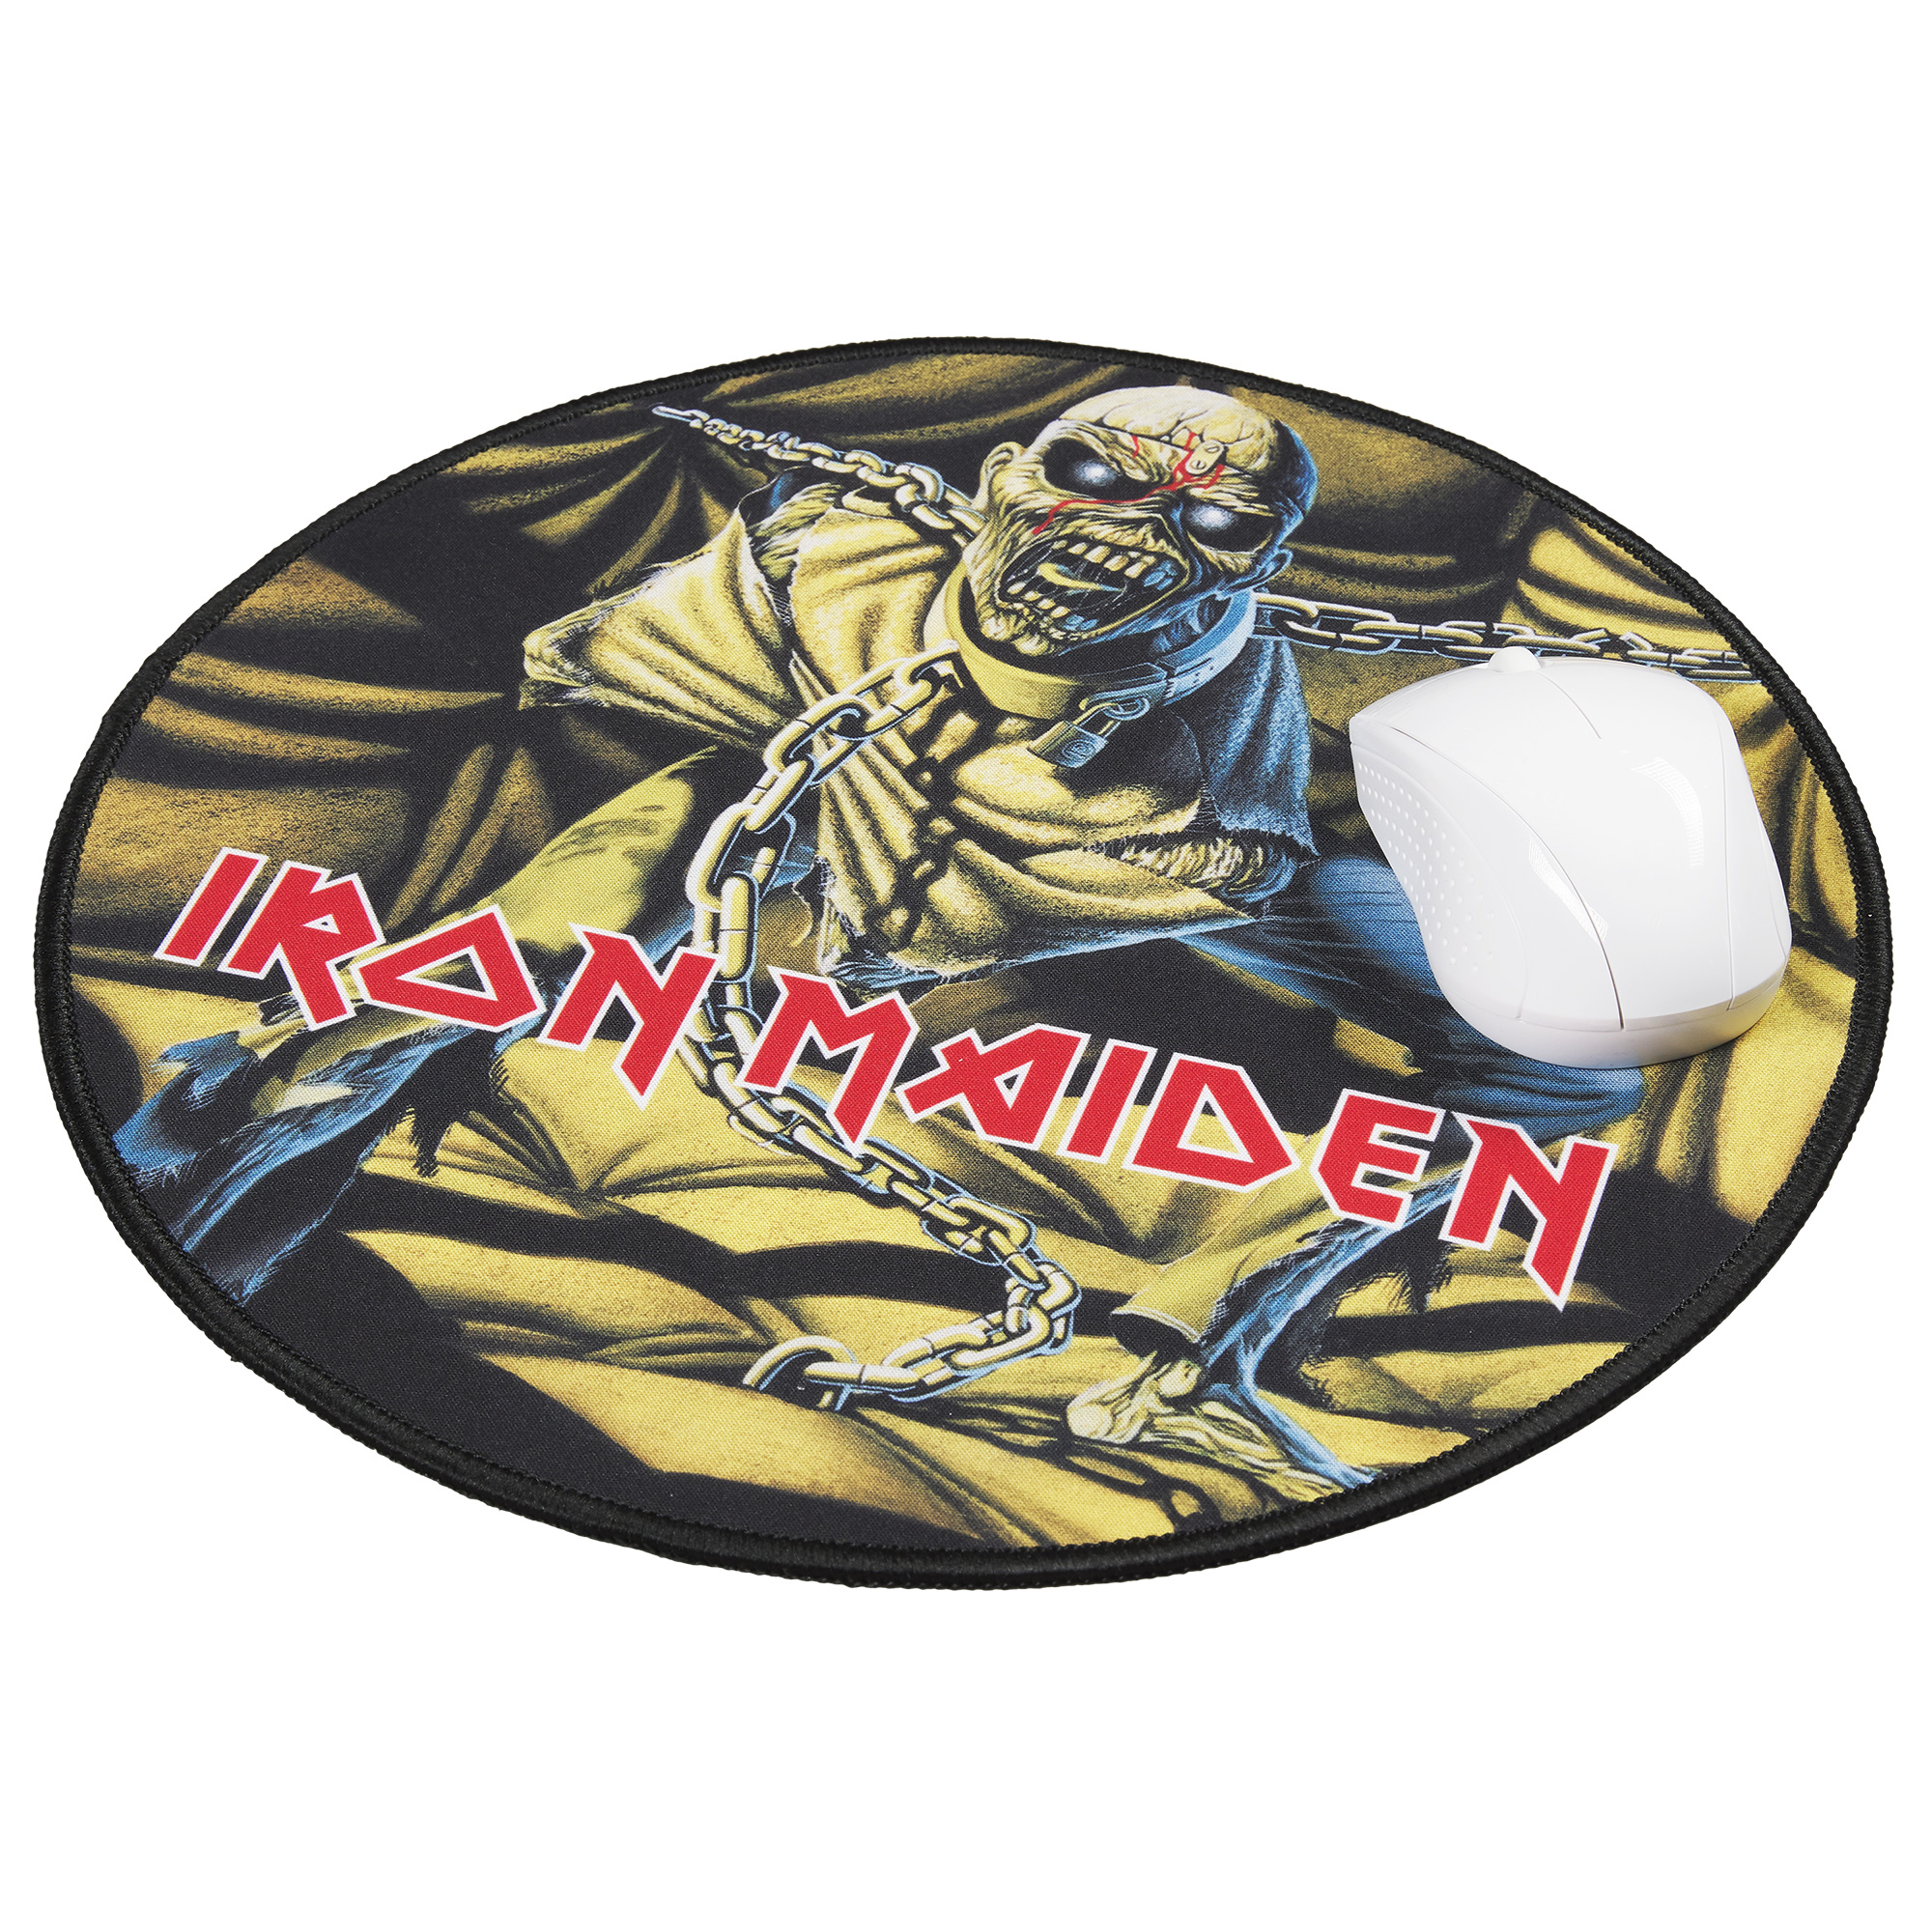 Tapis de souris XXL - Mouse pad XXL Iron Maiden